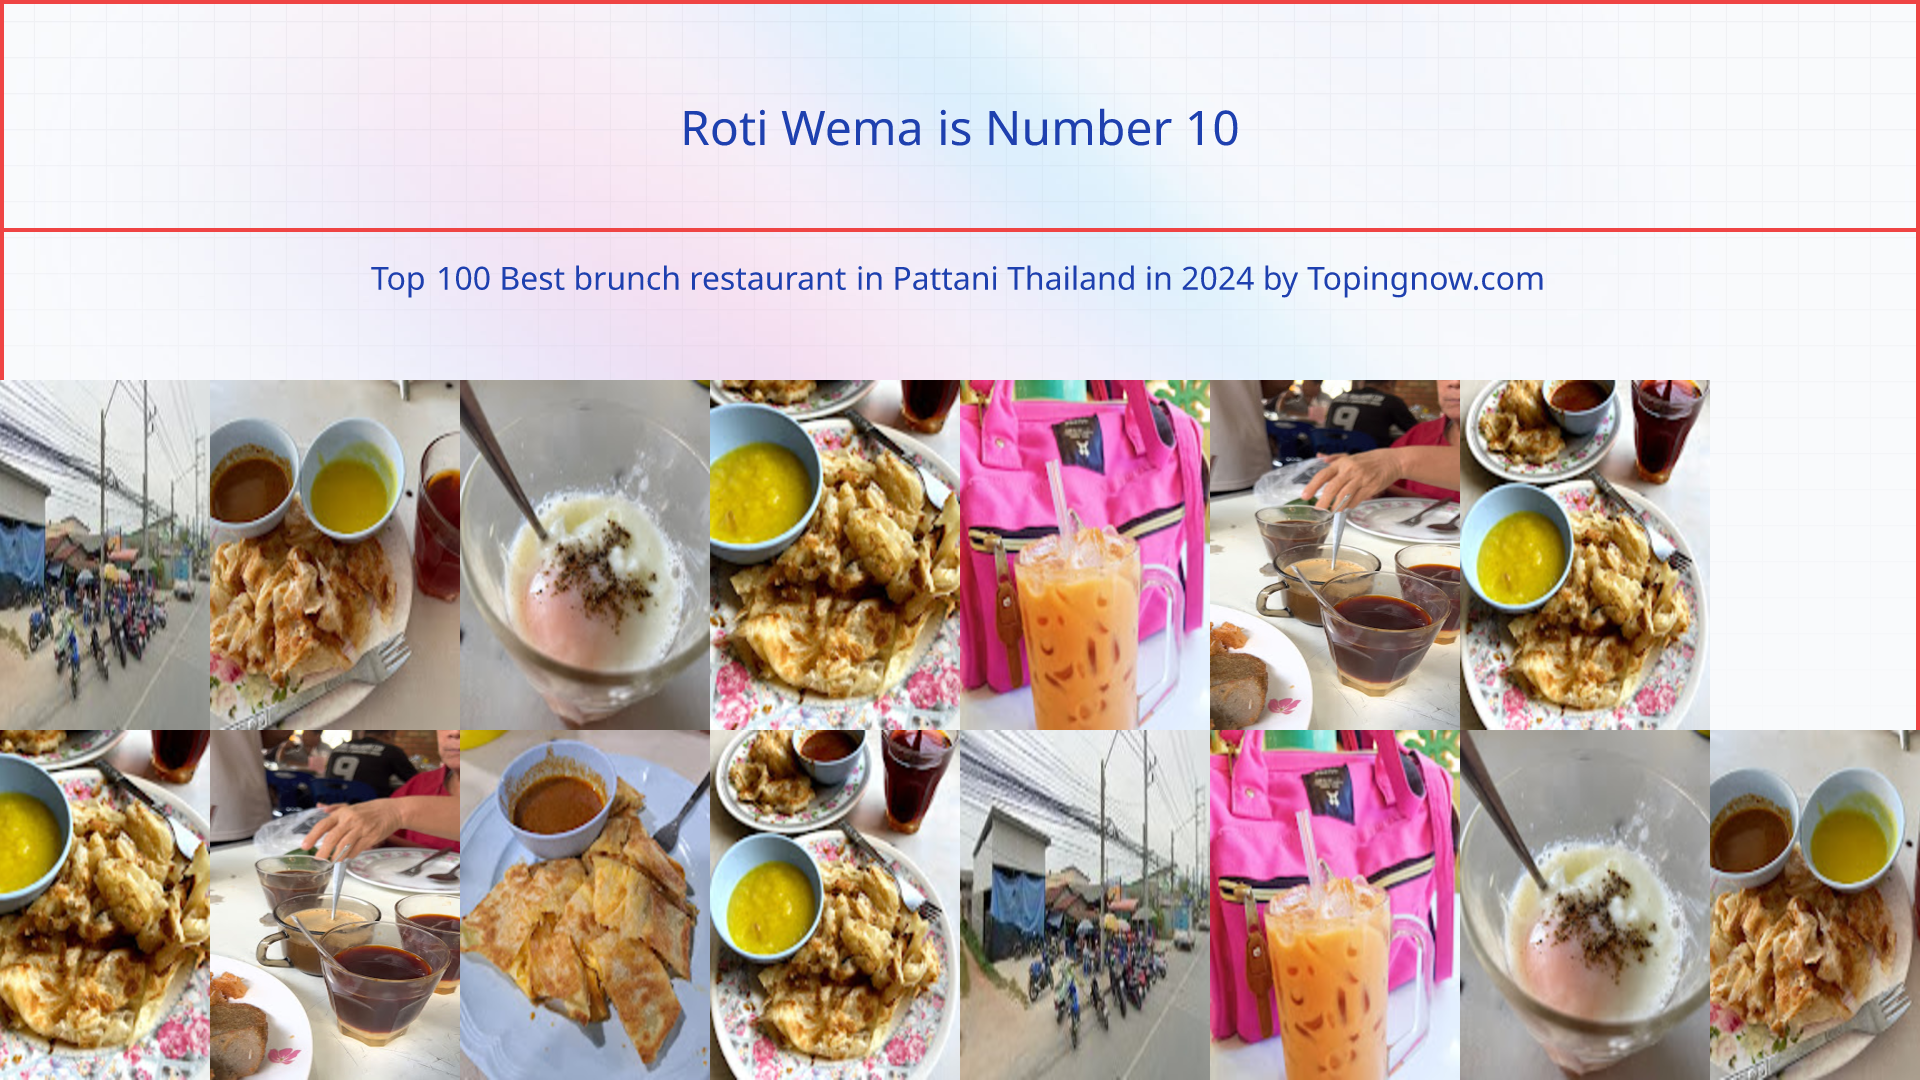 Roti Wema: Top 100 Best brunch restaurant in Pattani Thailand in 2024